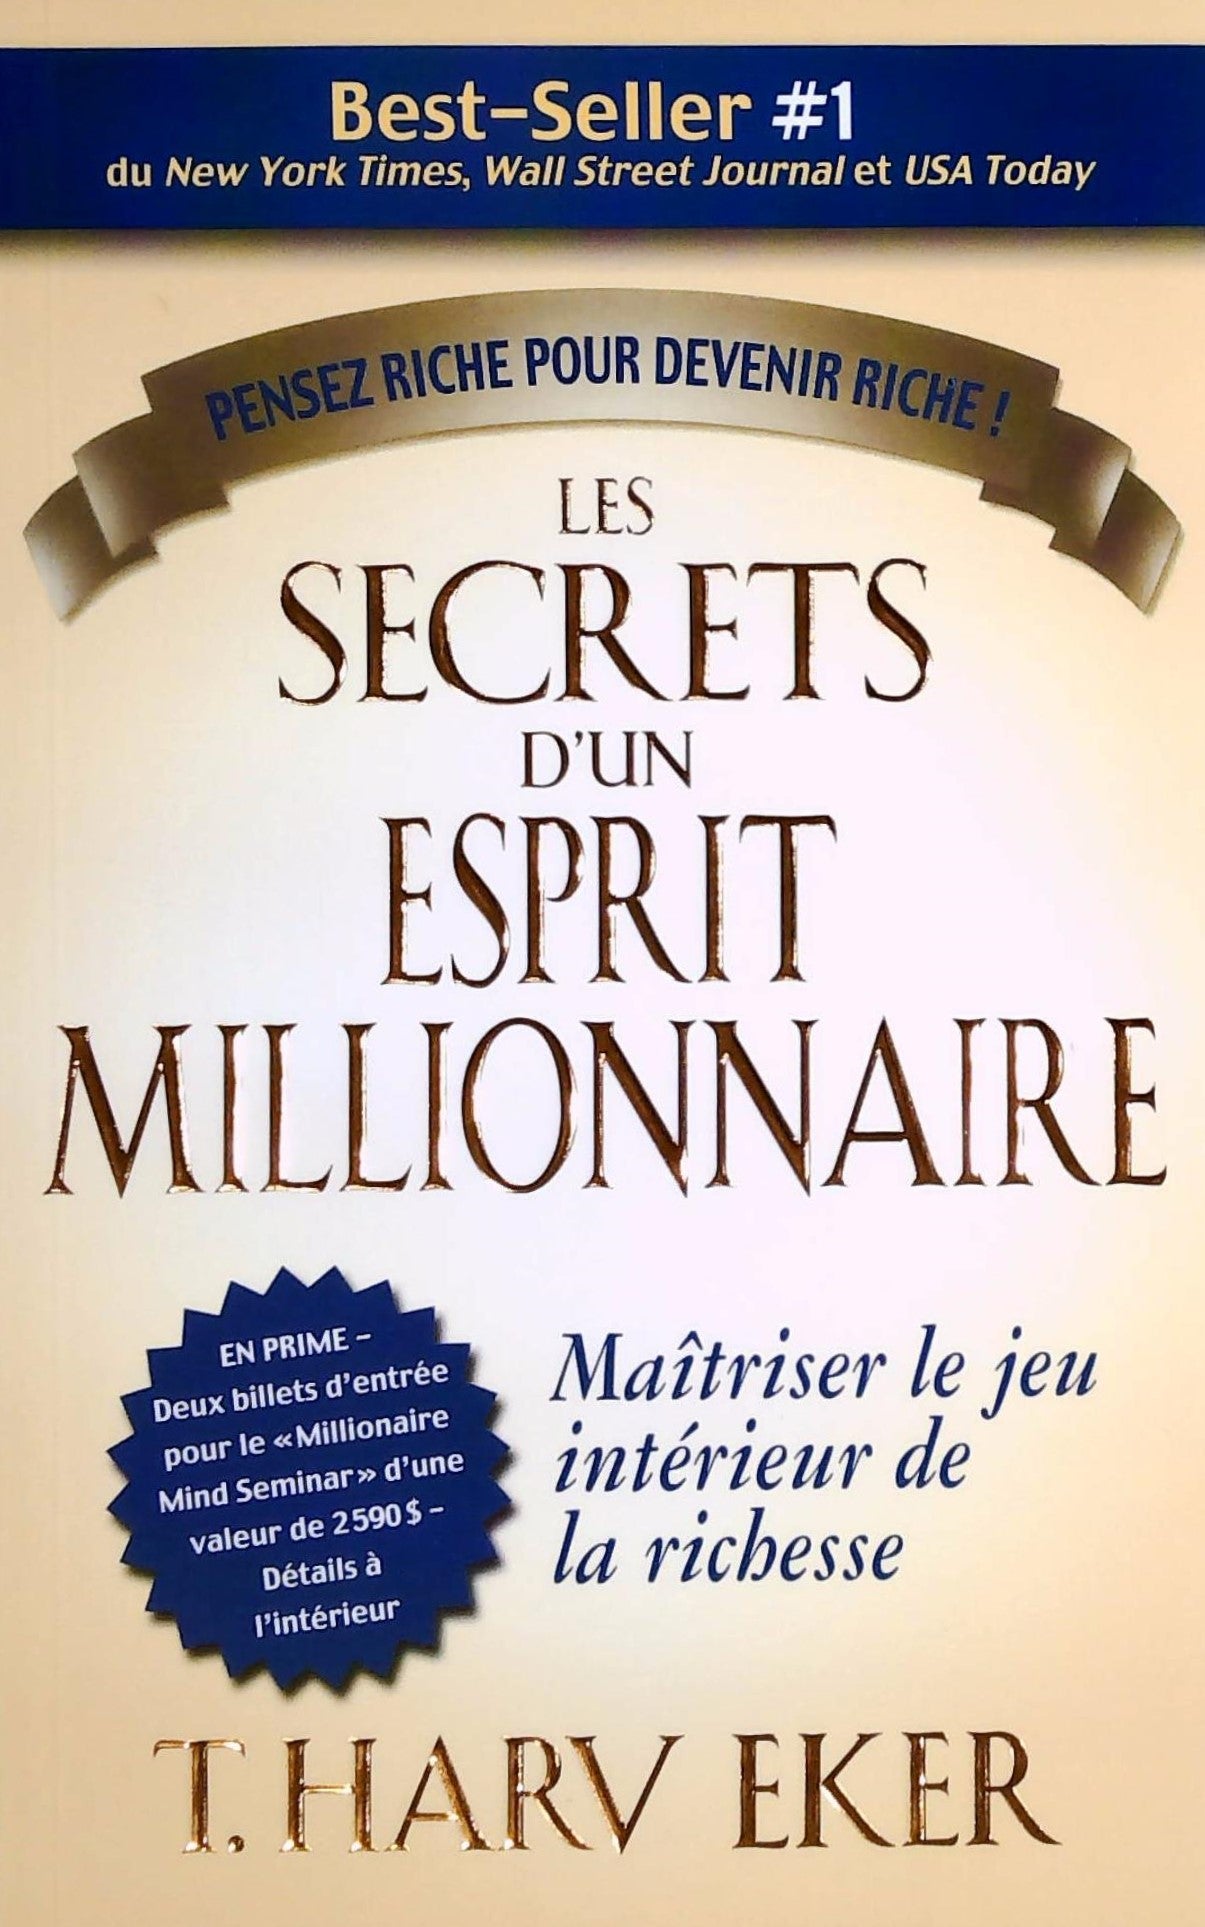 Livre ISBN 2922405419 Les secrets d'un esprit millionnaire: Maîtriser le jeu intérieur de la richesse (T.Harv Eker)